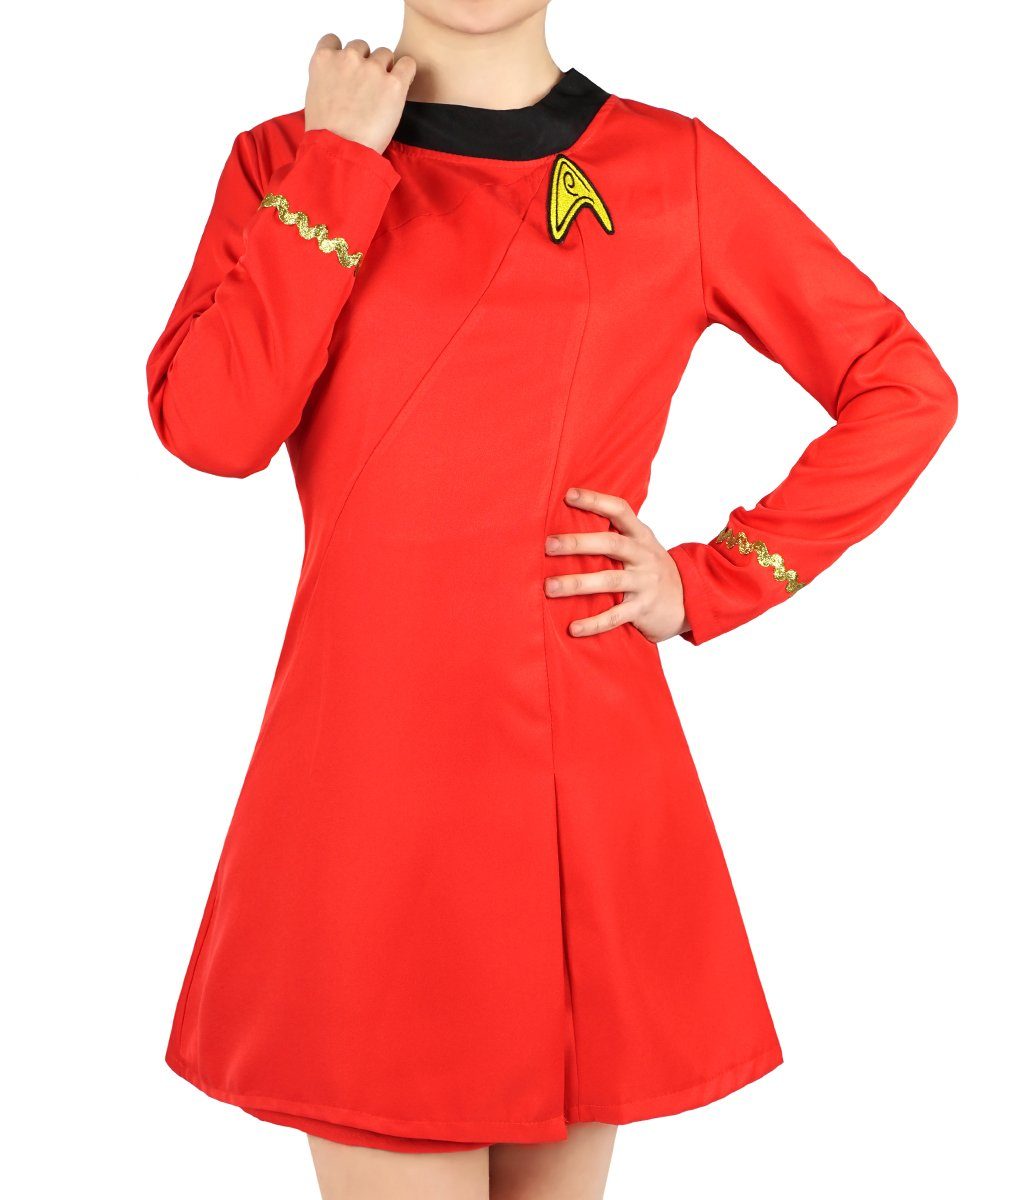 GalaxyCat Kostüm Star Trek Uniform der Sternenflotte von Nyota,  Sternenflotte Uniform von Nyota Uhura